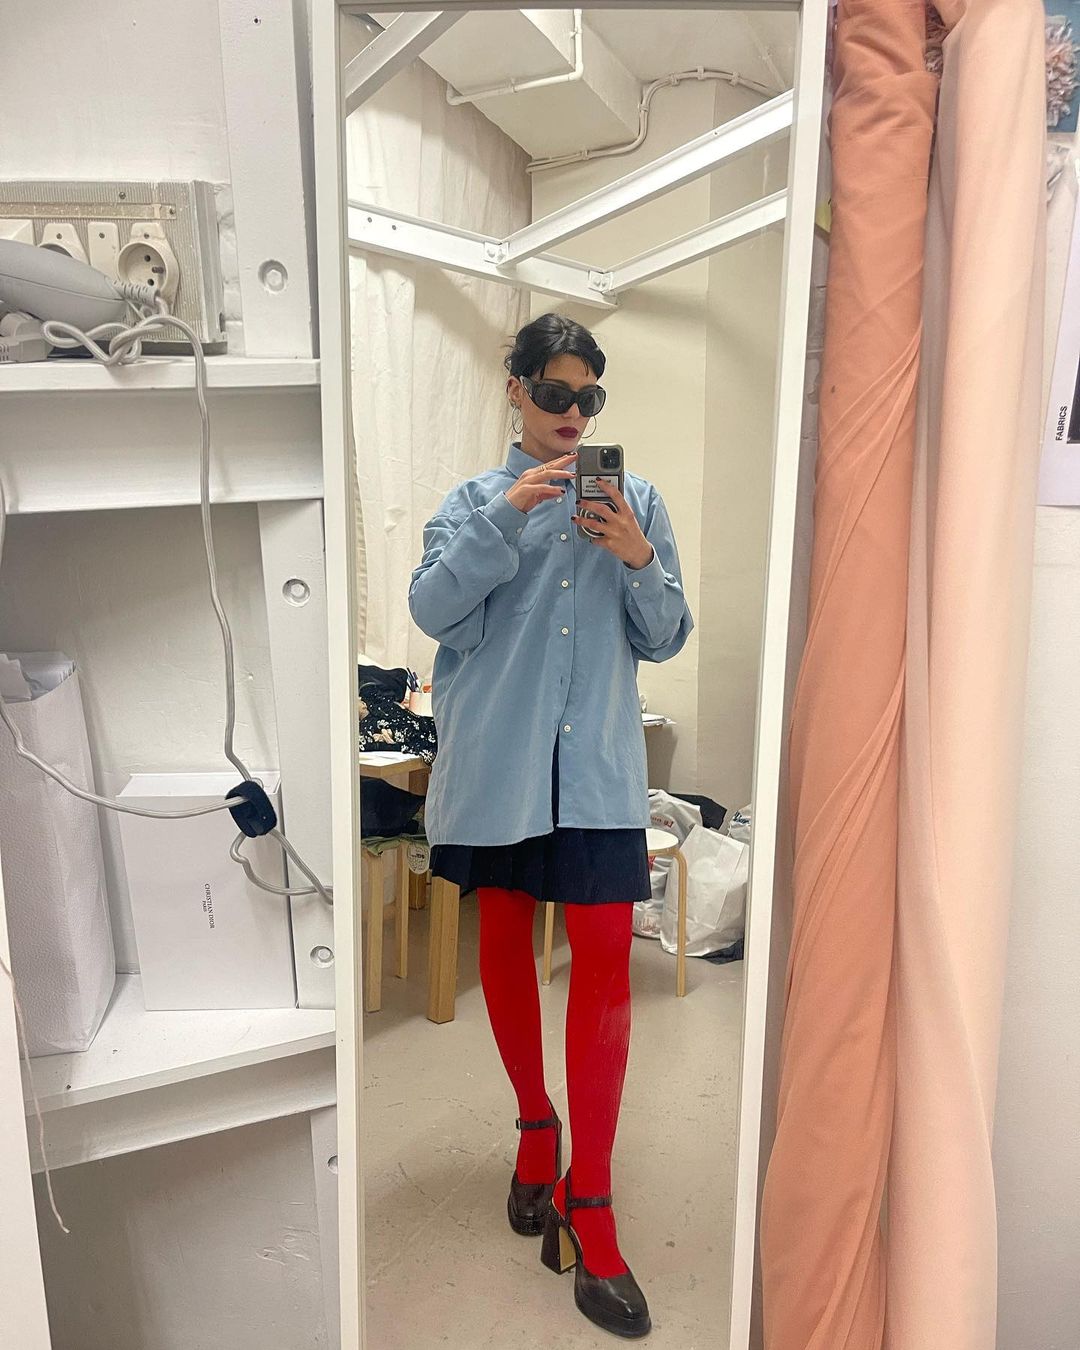 maria_bernad diện đồ thời trang xanh đỏ